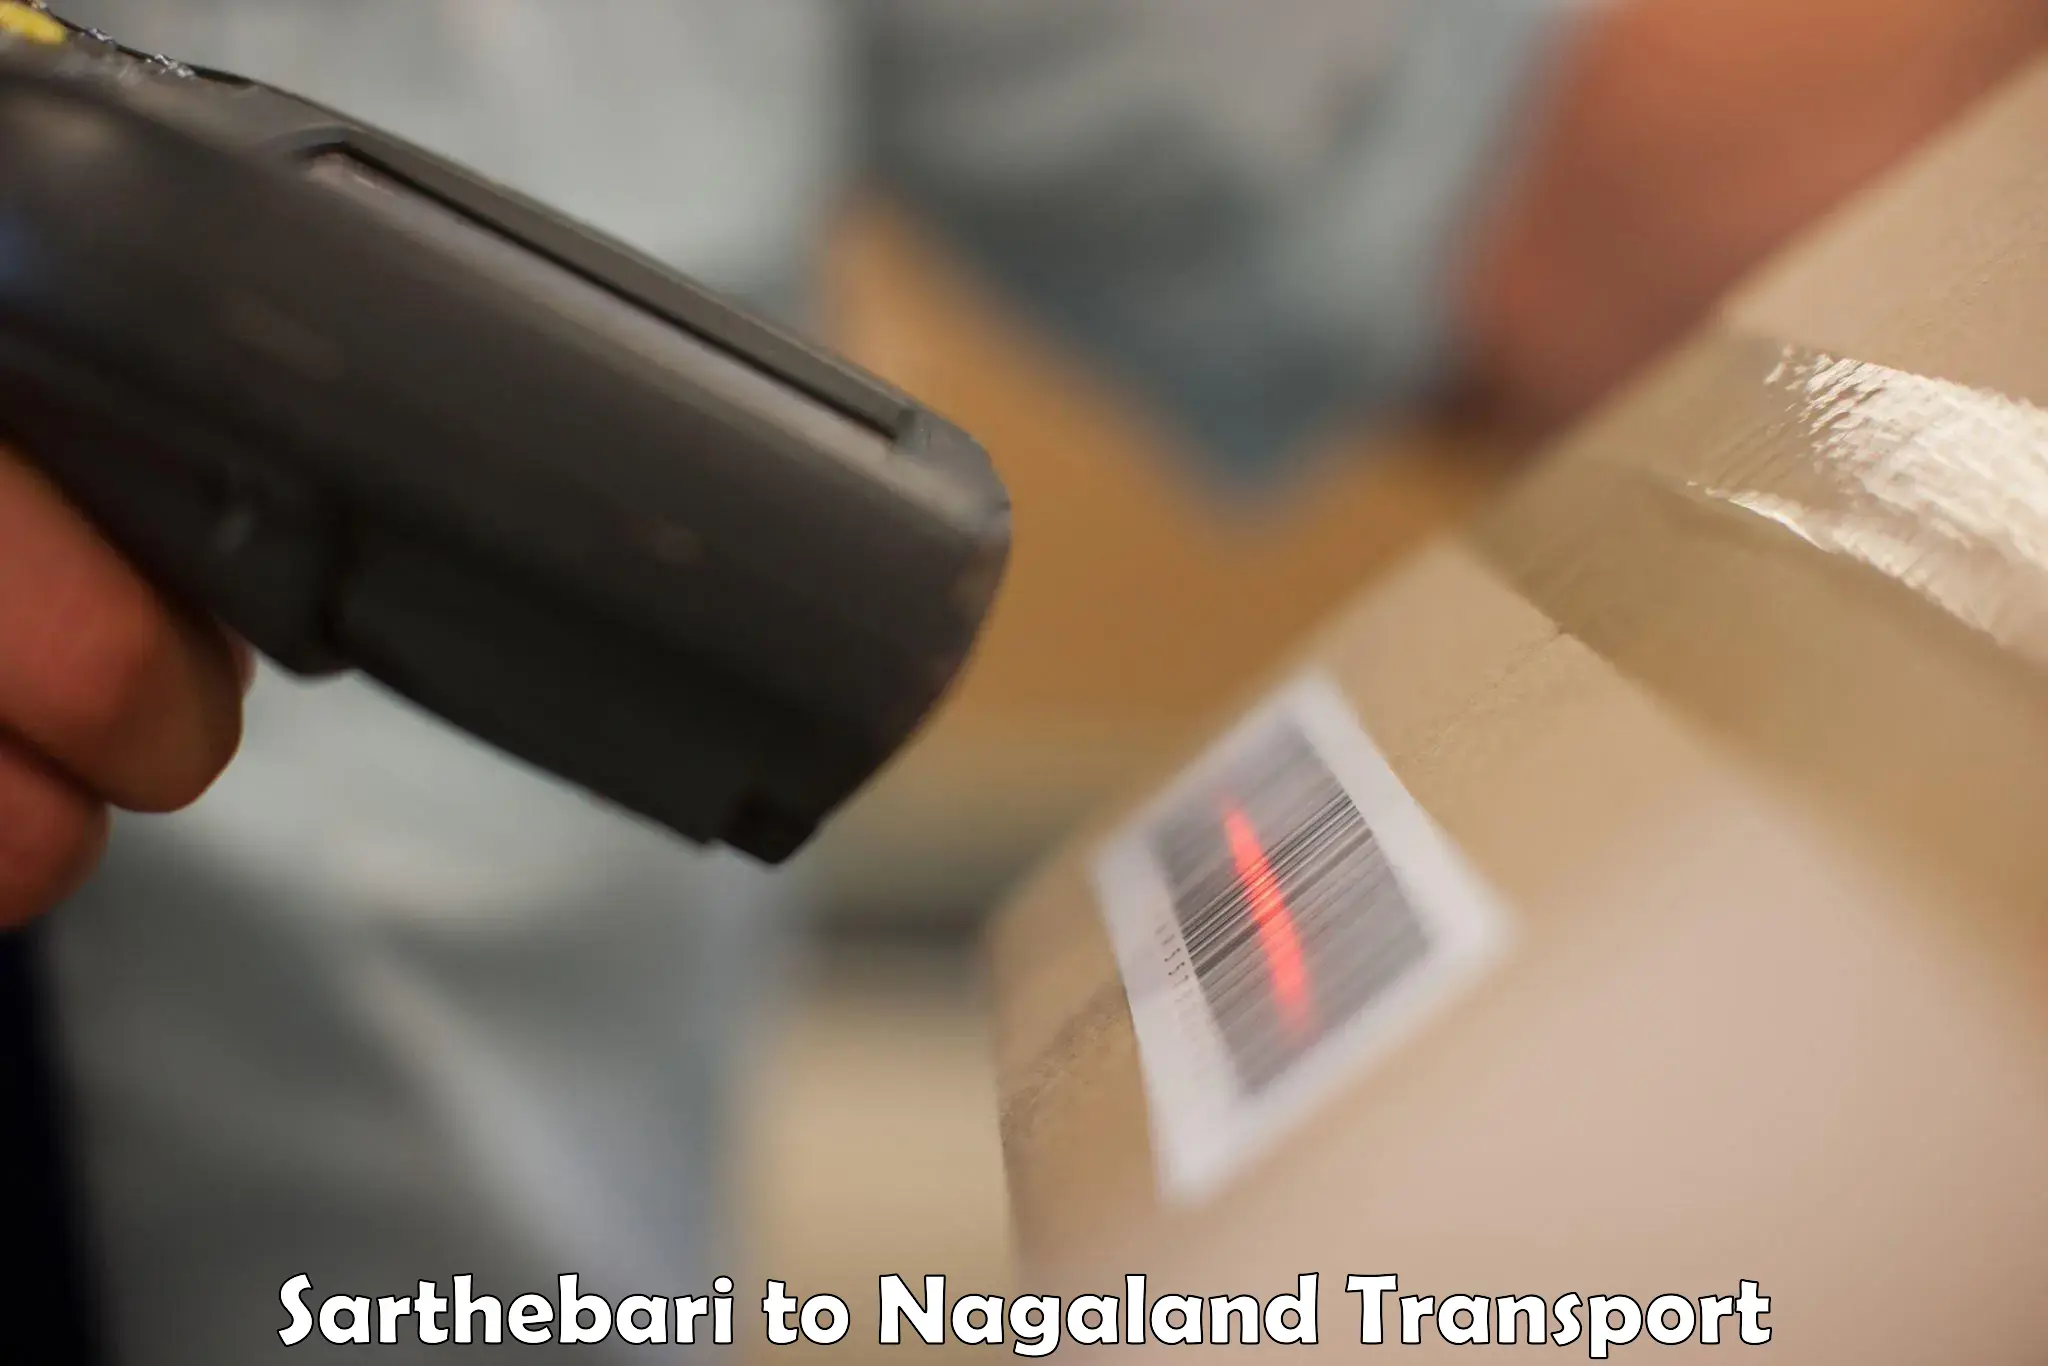 Online transport service Sarthebari to NIT Nagaland